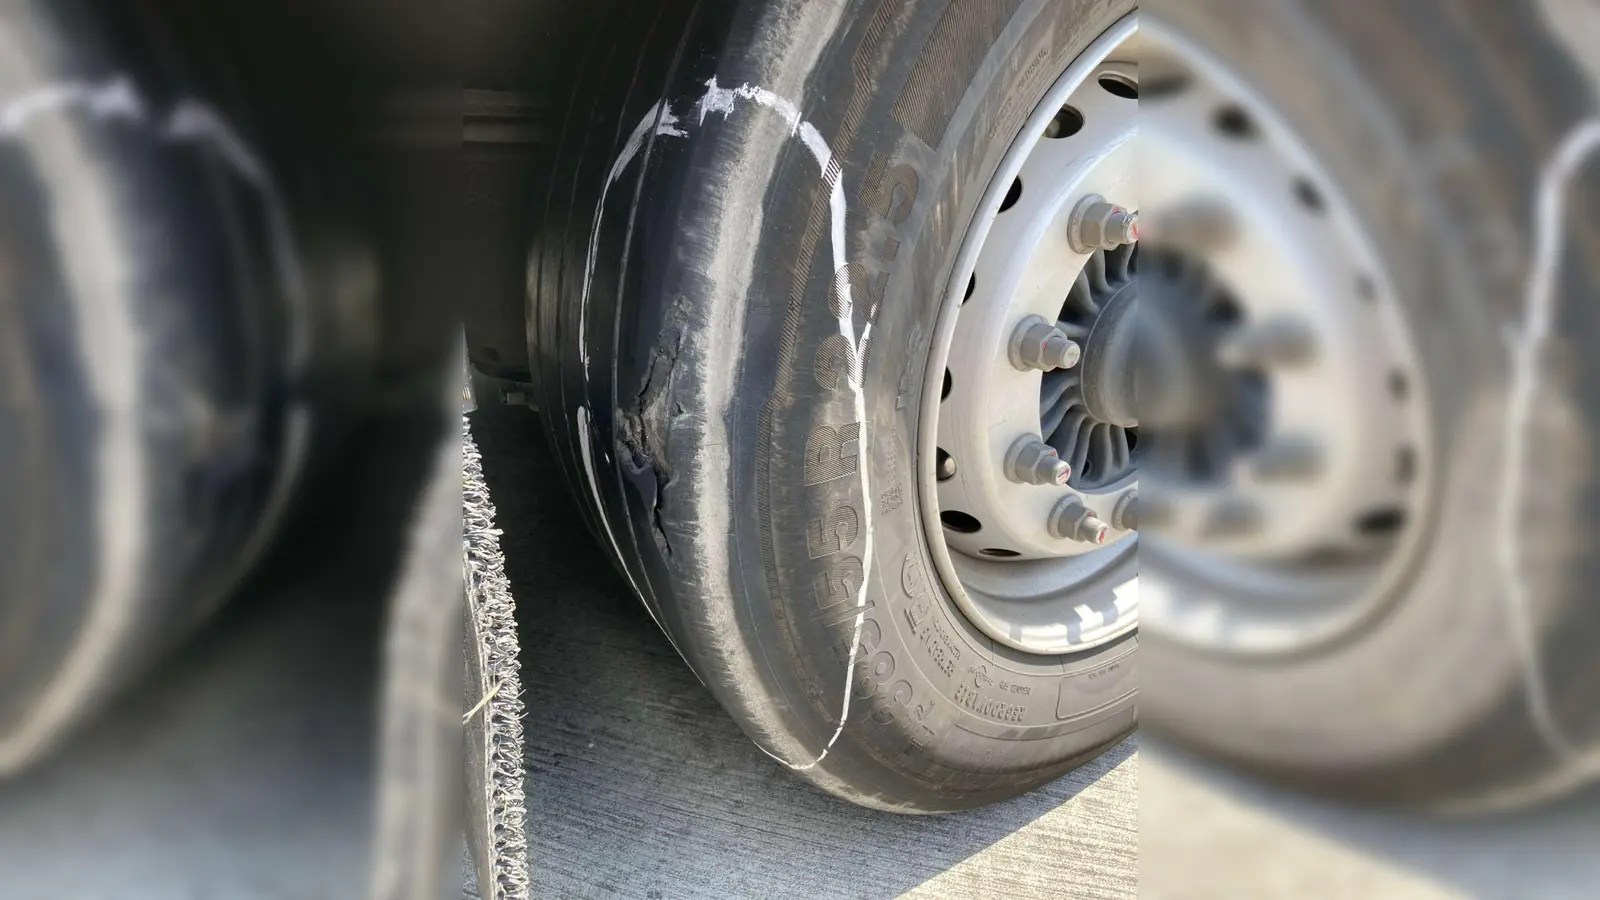 Die Reifen des Sattelzuges waren so weit abgefahren, dass es jederzeit zu einem Reifenplatzer hätte kommen können.  (Foto: Polizeipräsidium Schwaben Nord)